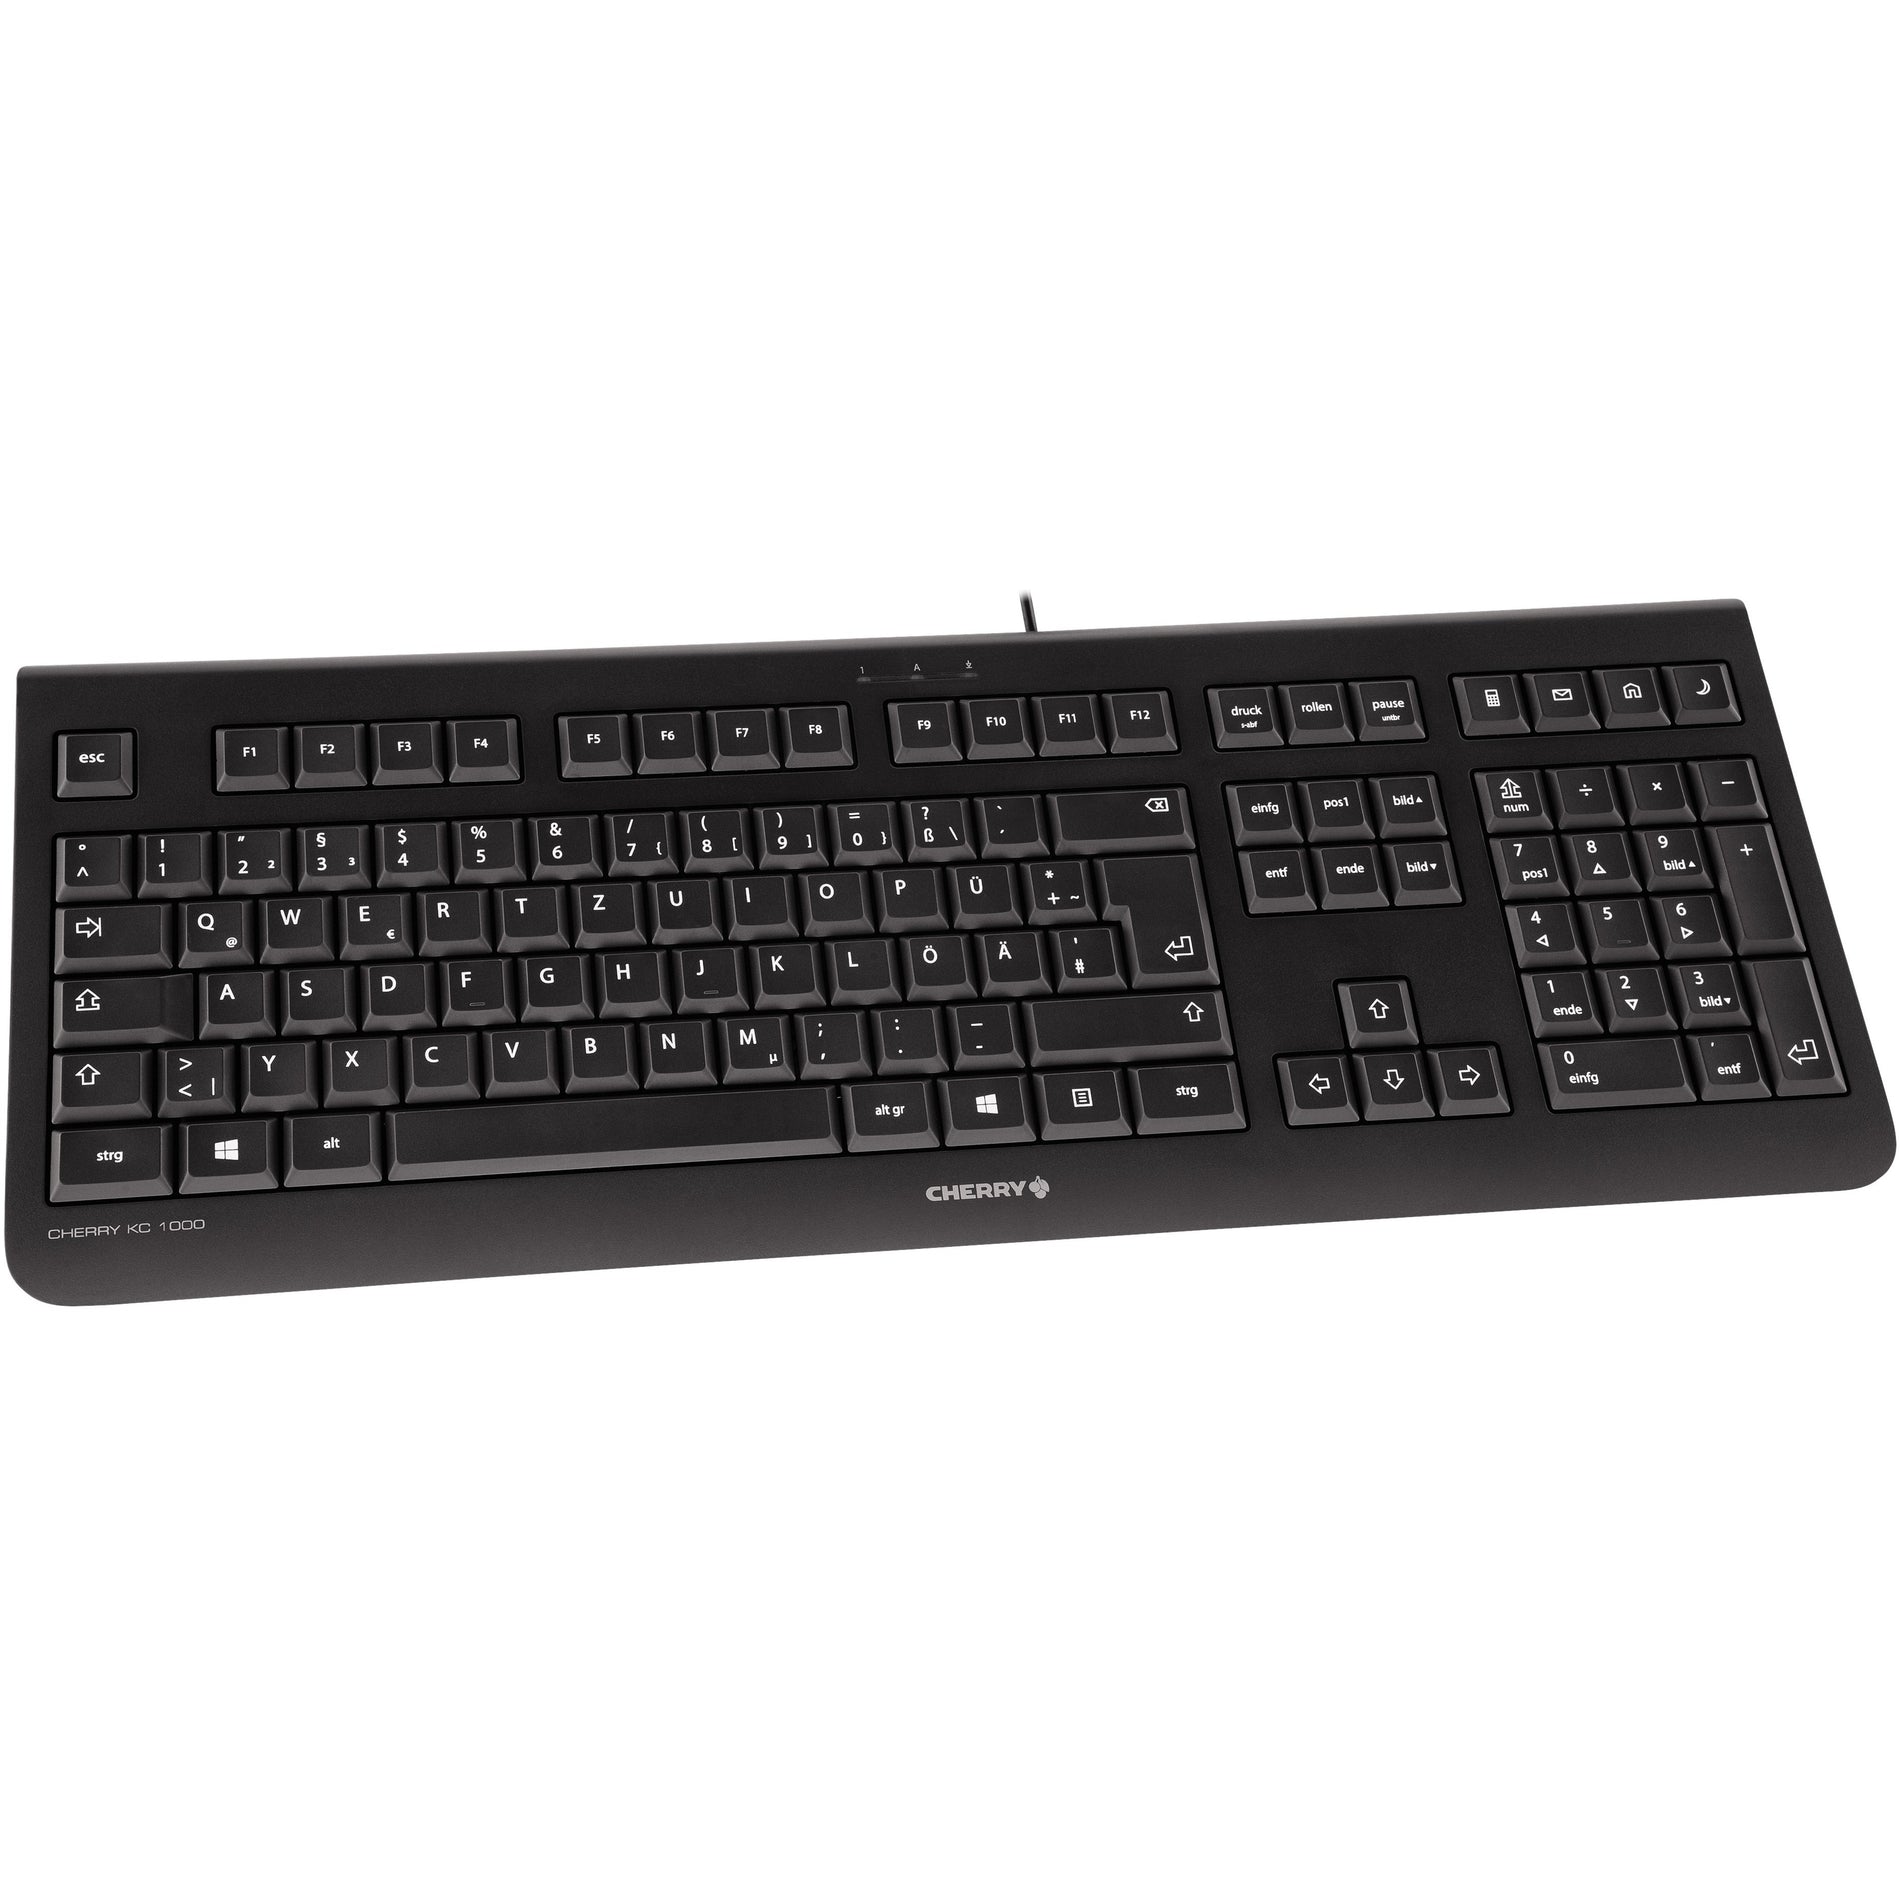 CHERRY JK-0800IT-2 KC 1000 Keyboard, Italian Layout, USB Wired, Black